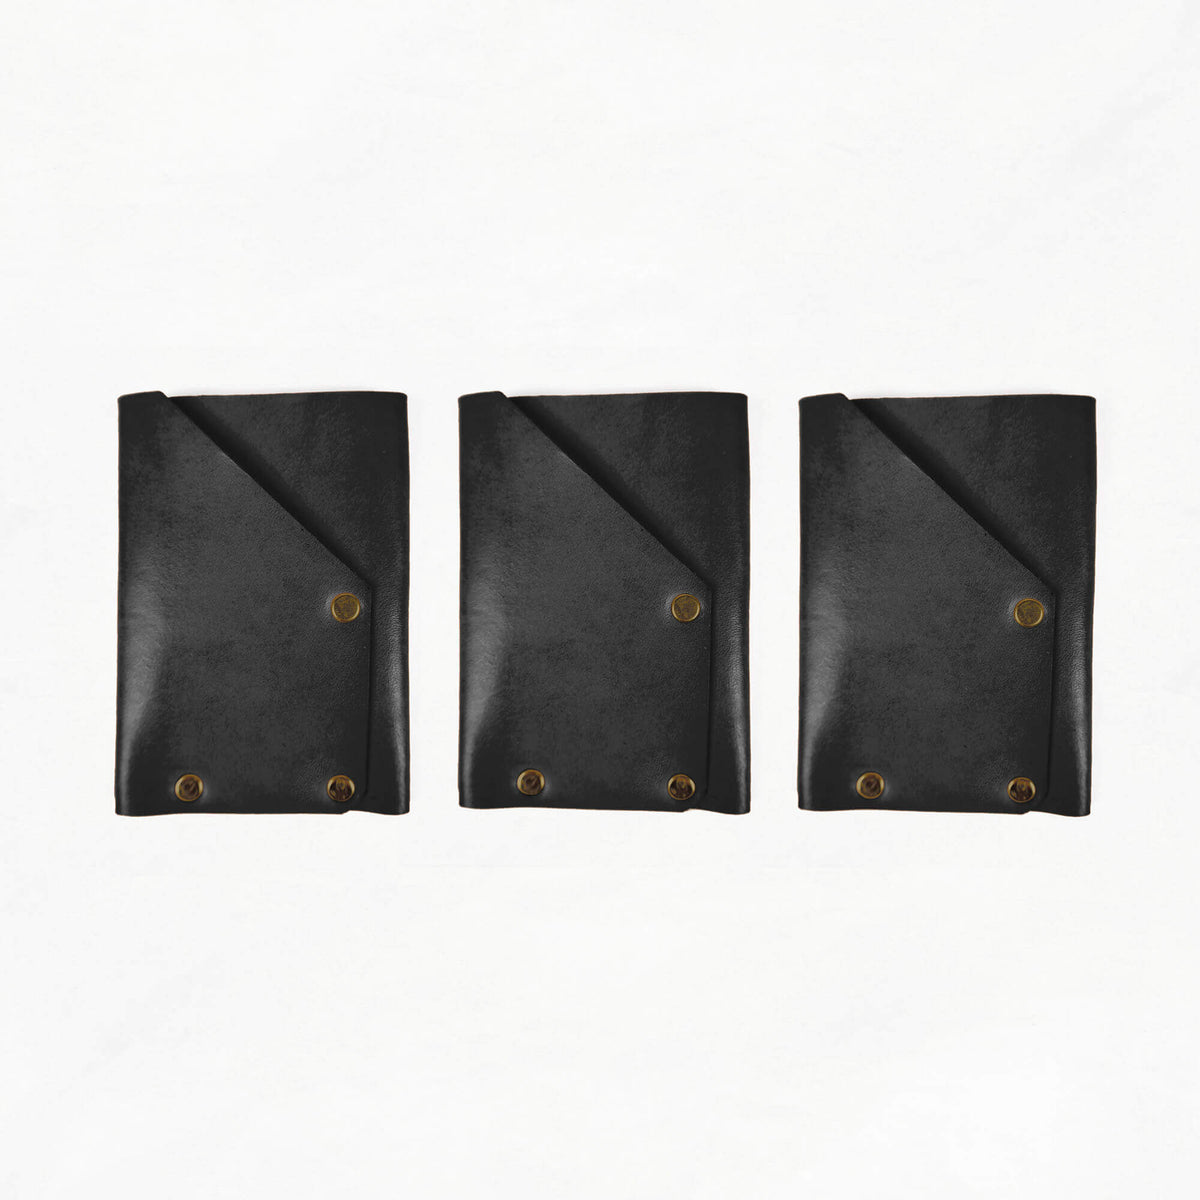 Leather Card Holder Kit - LETHR - CARD - WAL - BLA - 3 - BUNDL - Quick Makes - Klum House